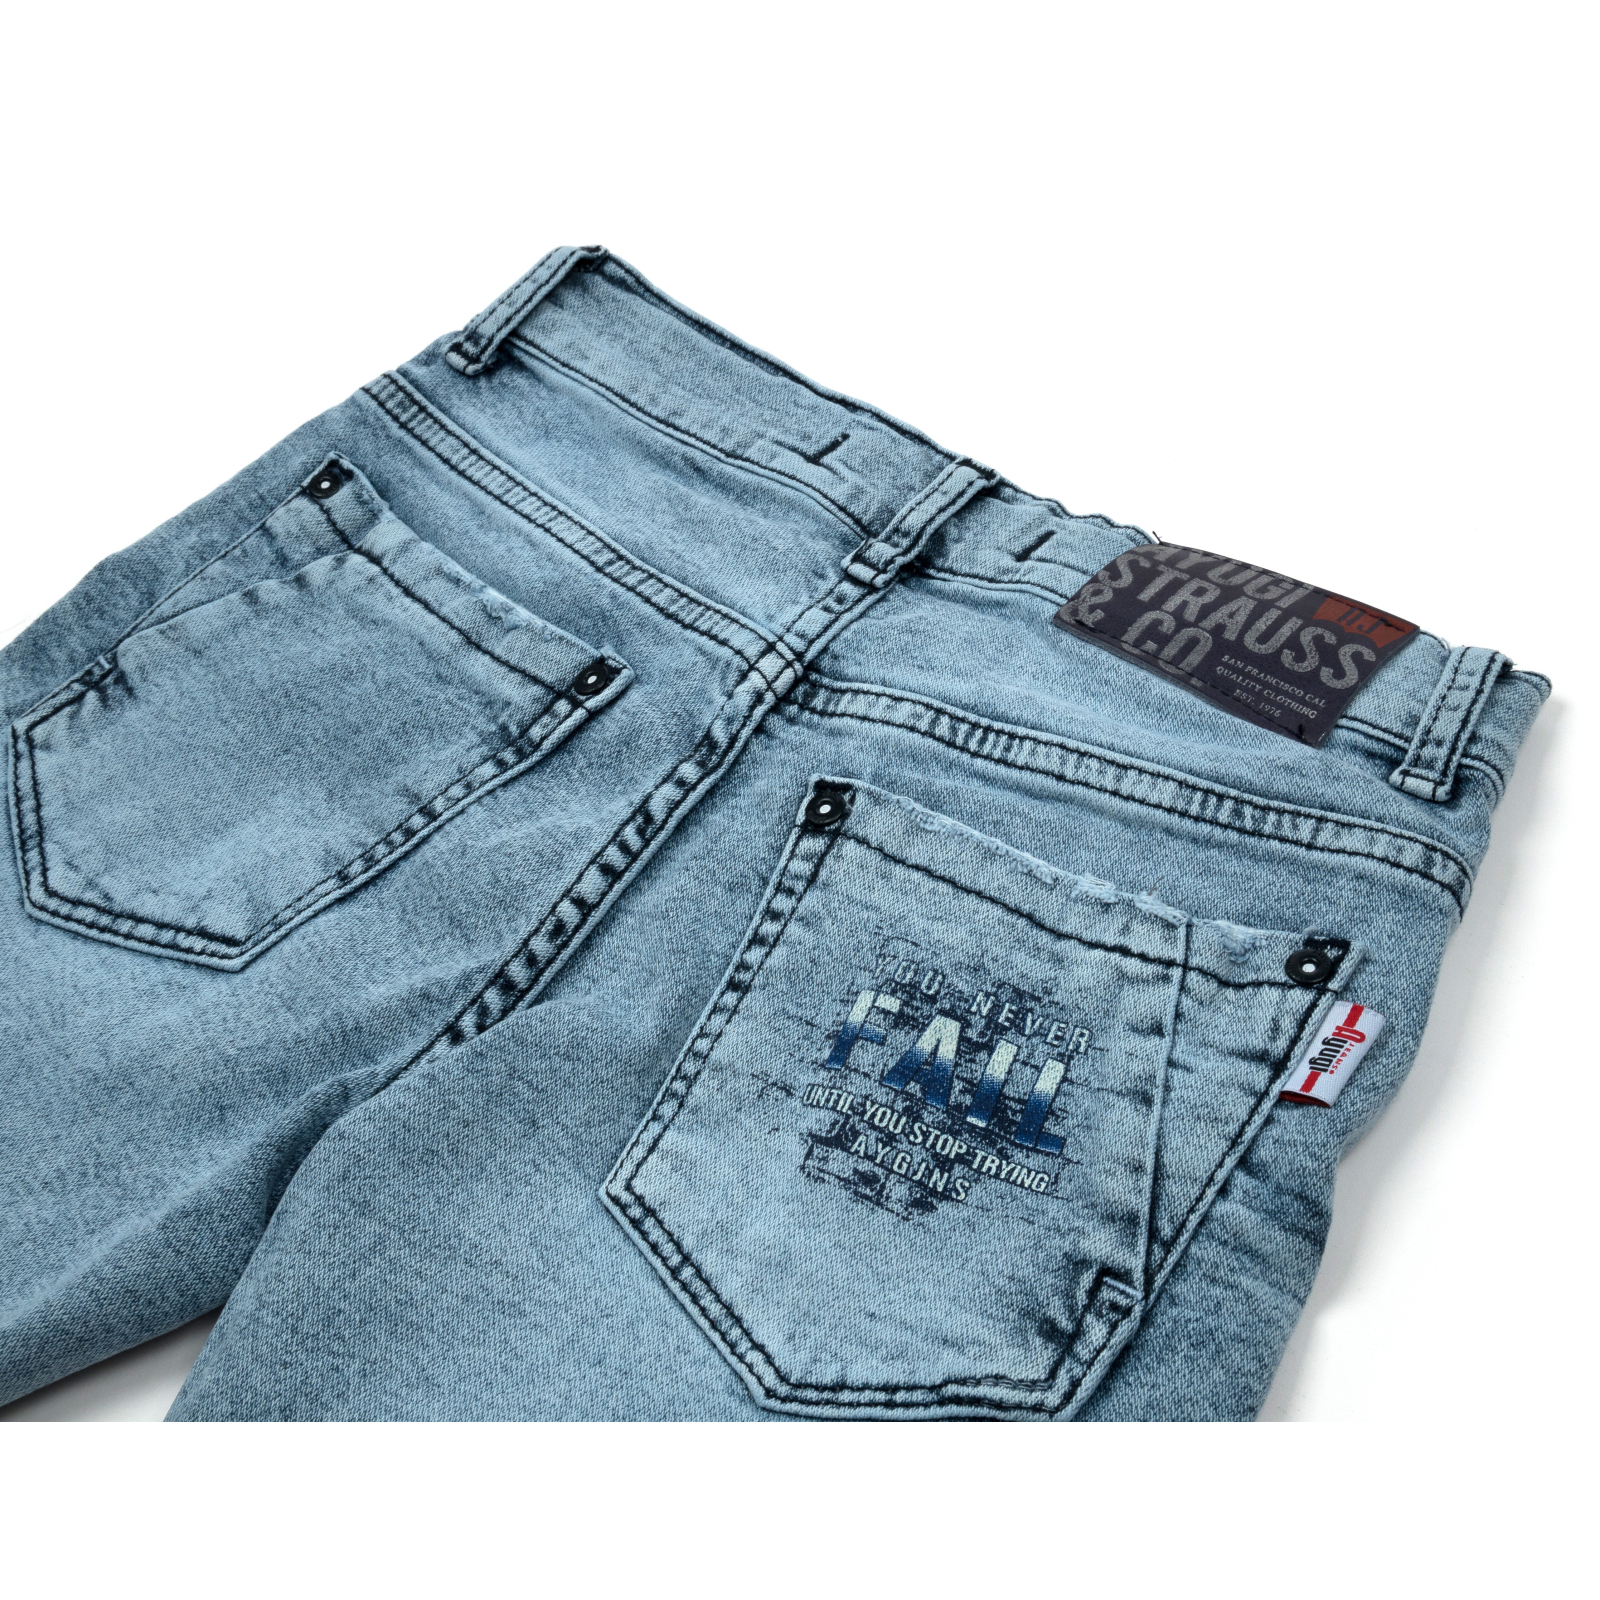 Шорты A-Yugi джинсовые (5260-146B-blue) изображение 4